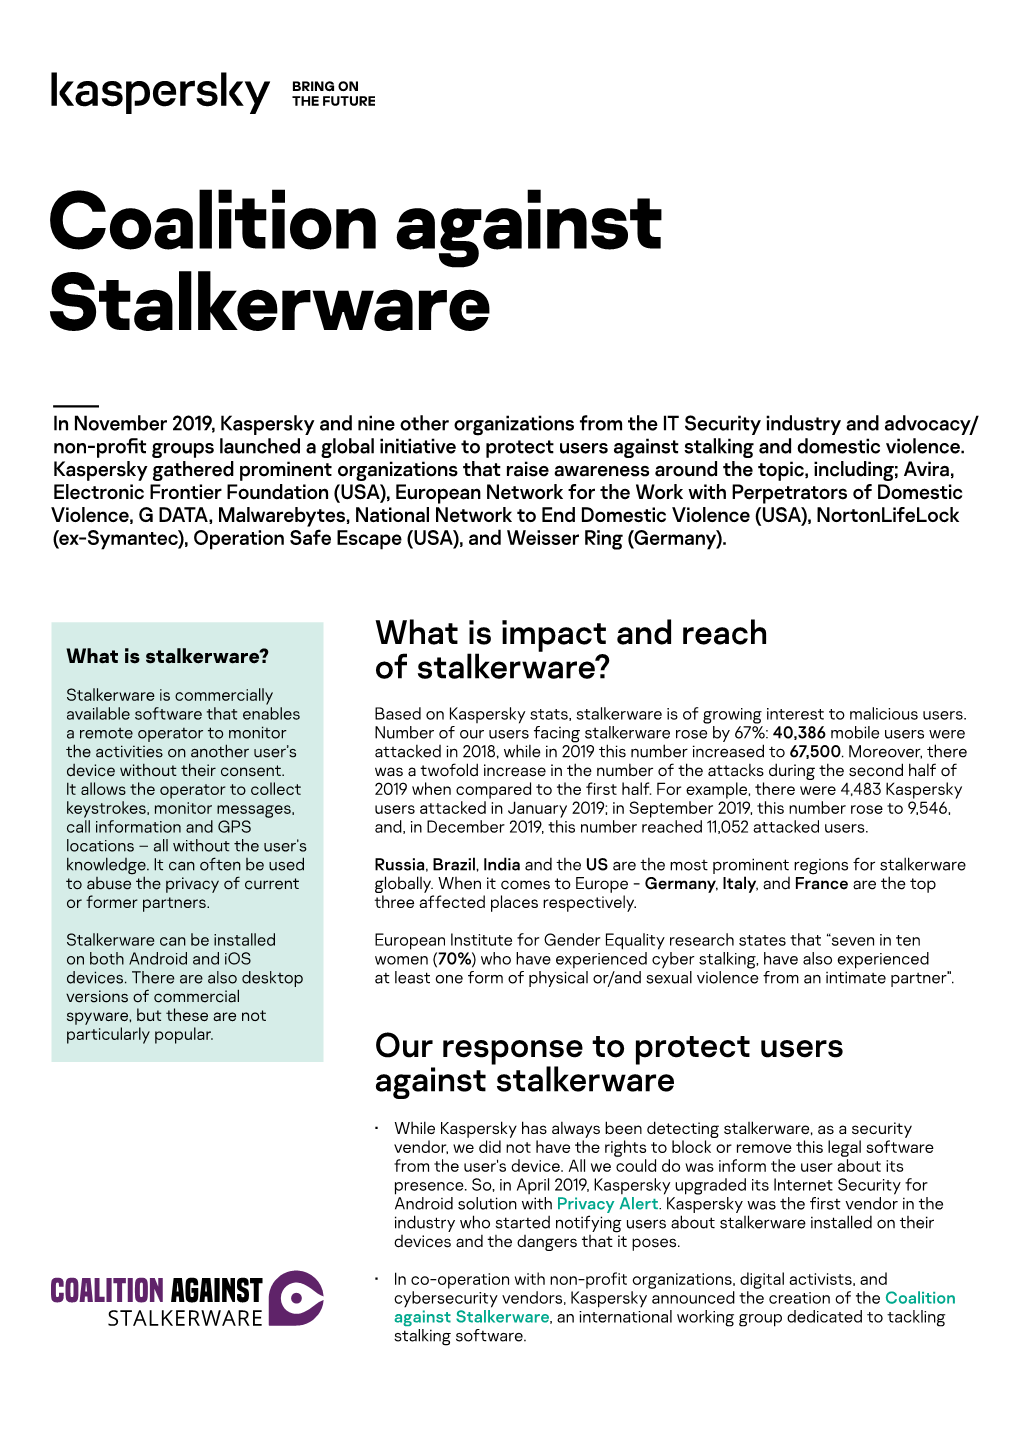 Coalition Against Stalkerware